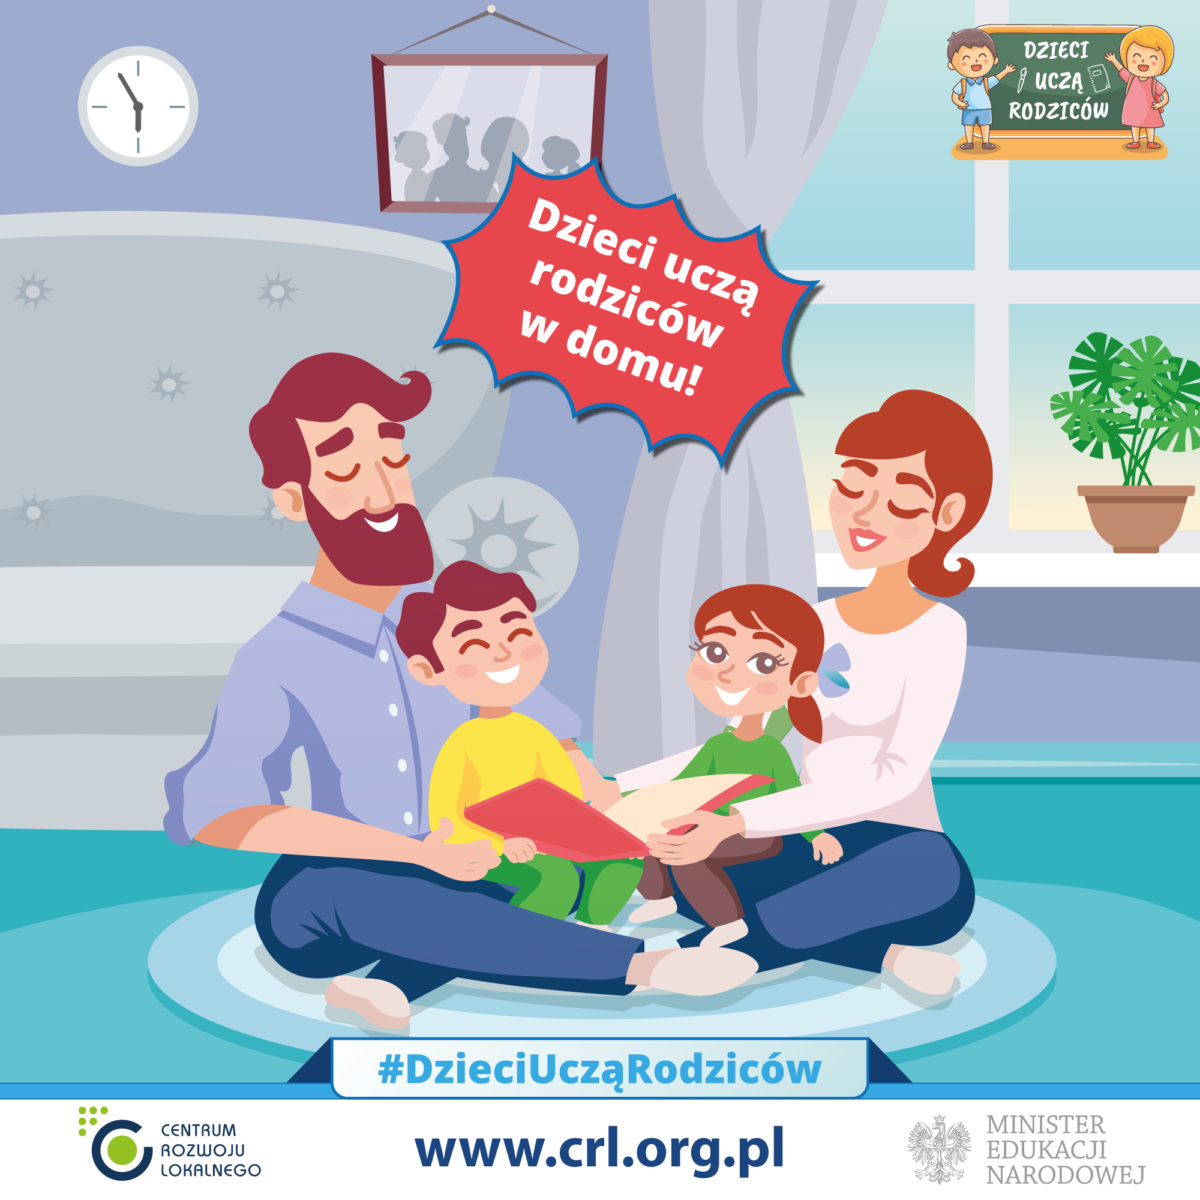 Tytuł: Dzieci uczą rodziców w domu!